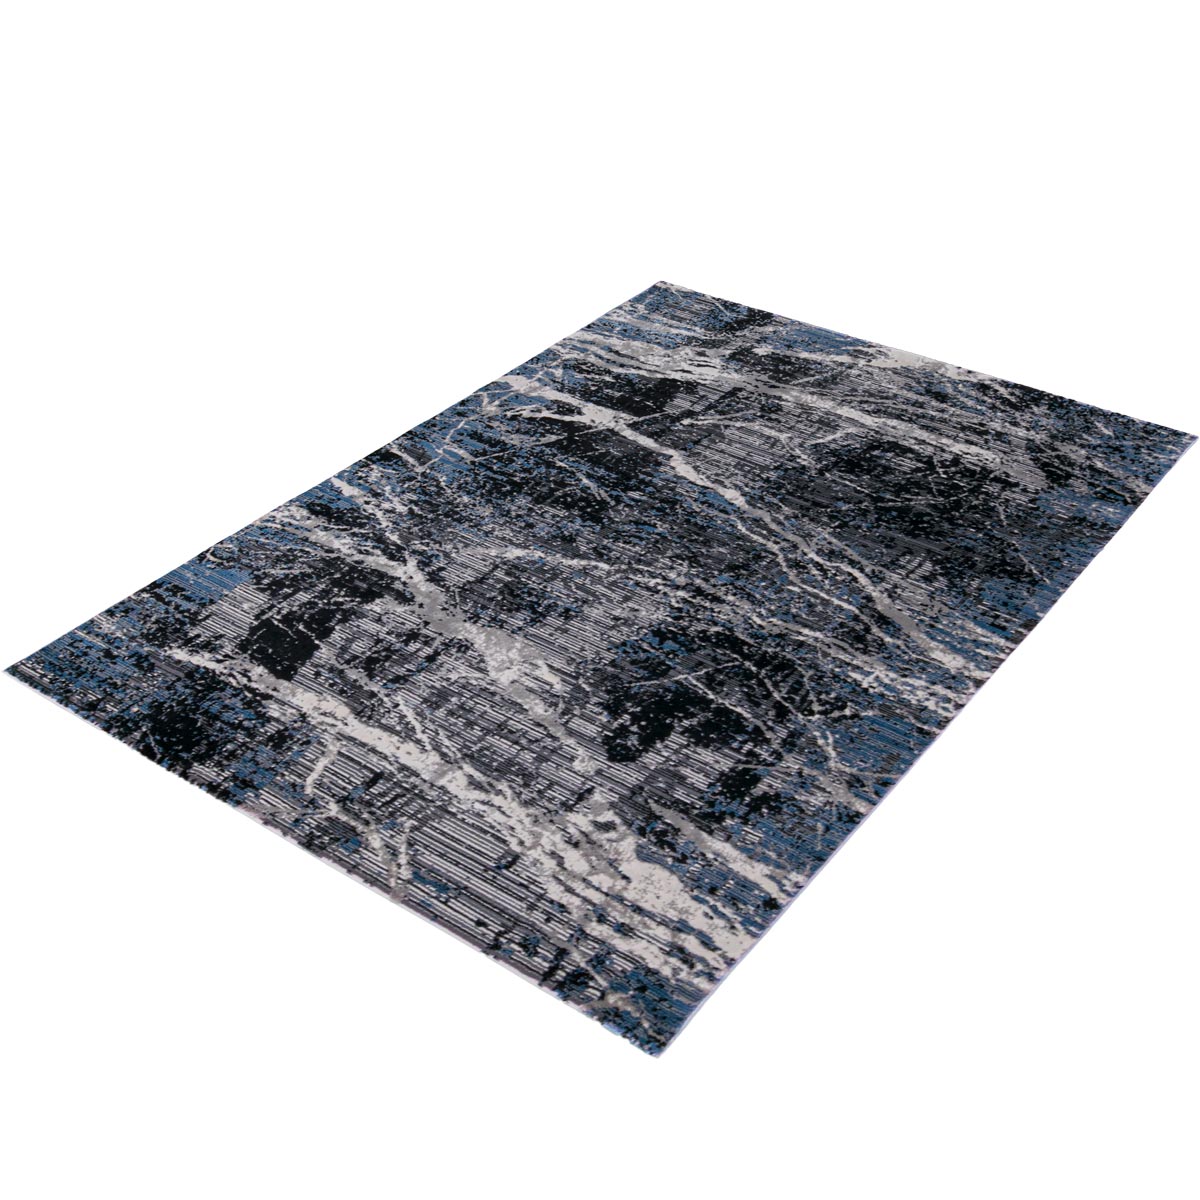 שטיח טורונטו 25 אפור כהה/אפור/כחול | השטיח האדום